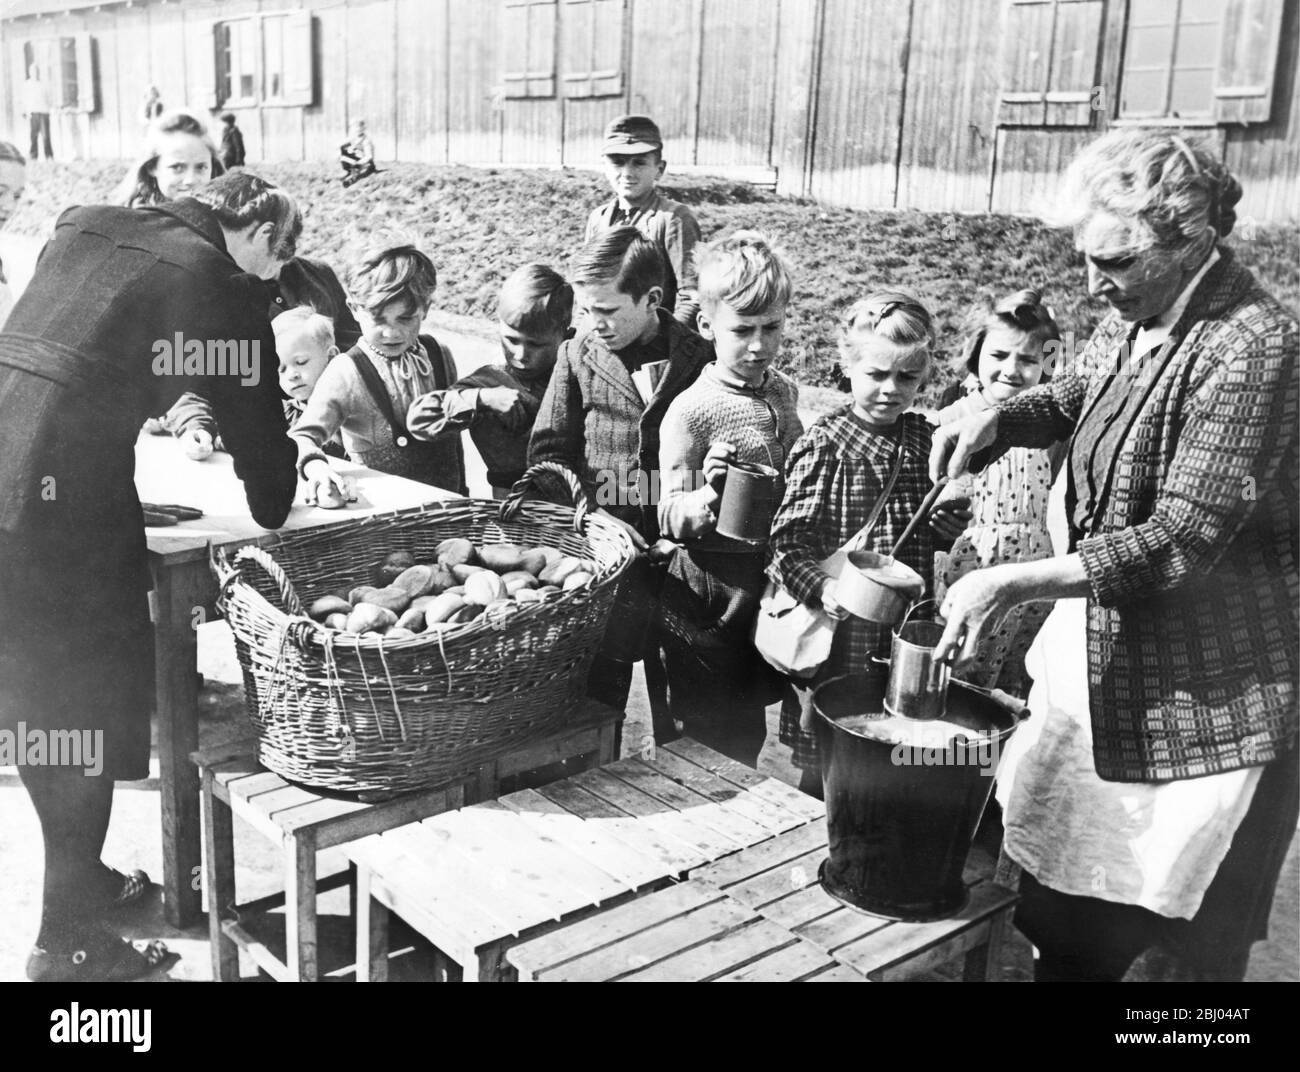 Deutschland nach dem Krieg. Dezember 1948 - Hof, Deutschland. Diese Kinder bekommen appetitliche Suppe und Rollen durch das Schulspeiseportraget, das vom Hilfswerk unterstützt wird. Diese Jugendlichen gehören zu Familien, die aus Osteuropa vertrieben wurden, weil sie Deutsche sind. Stockfoto